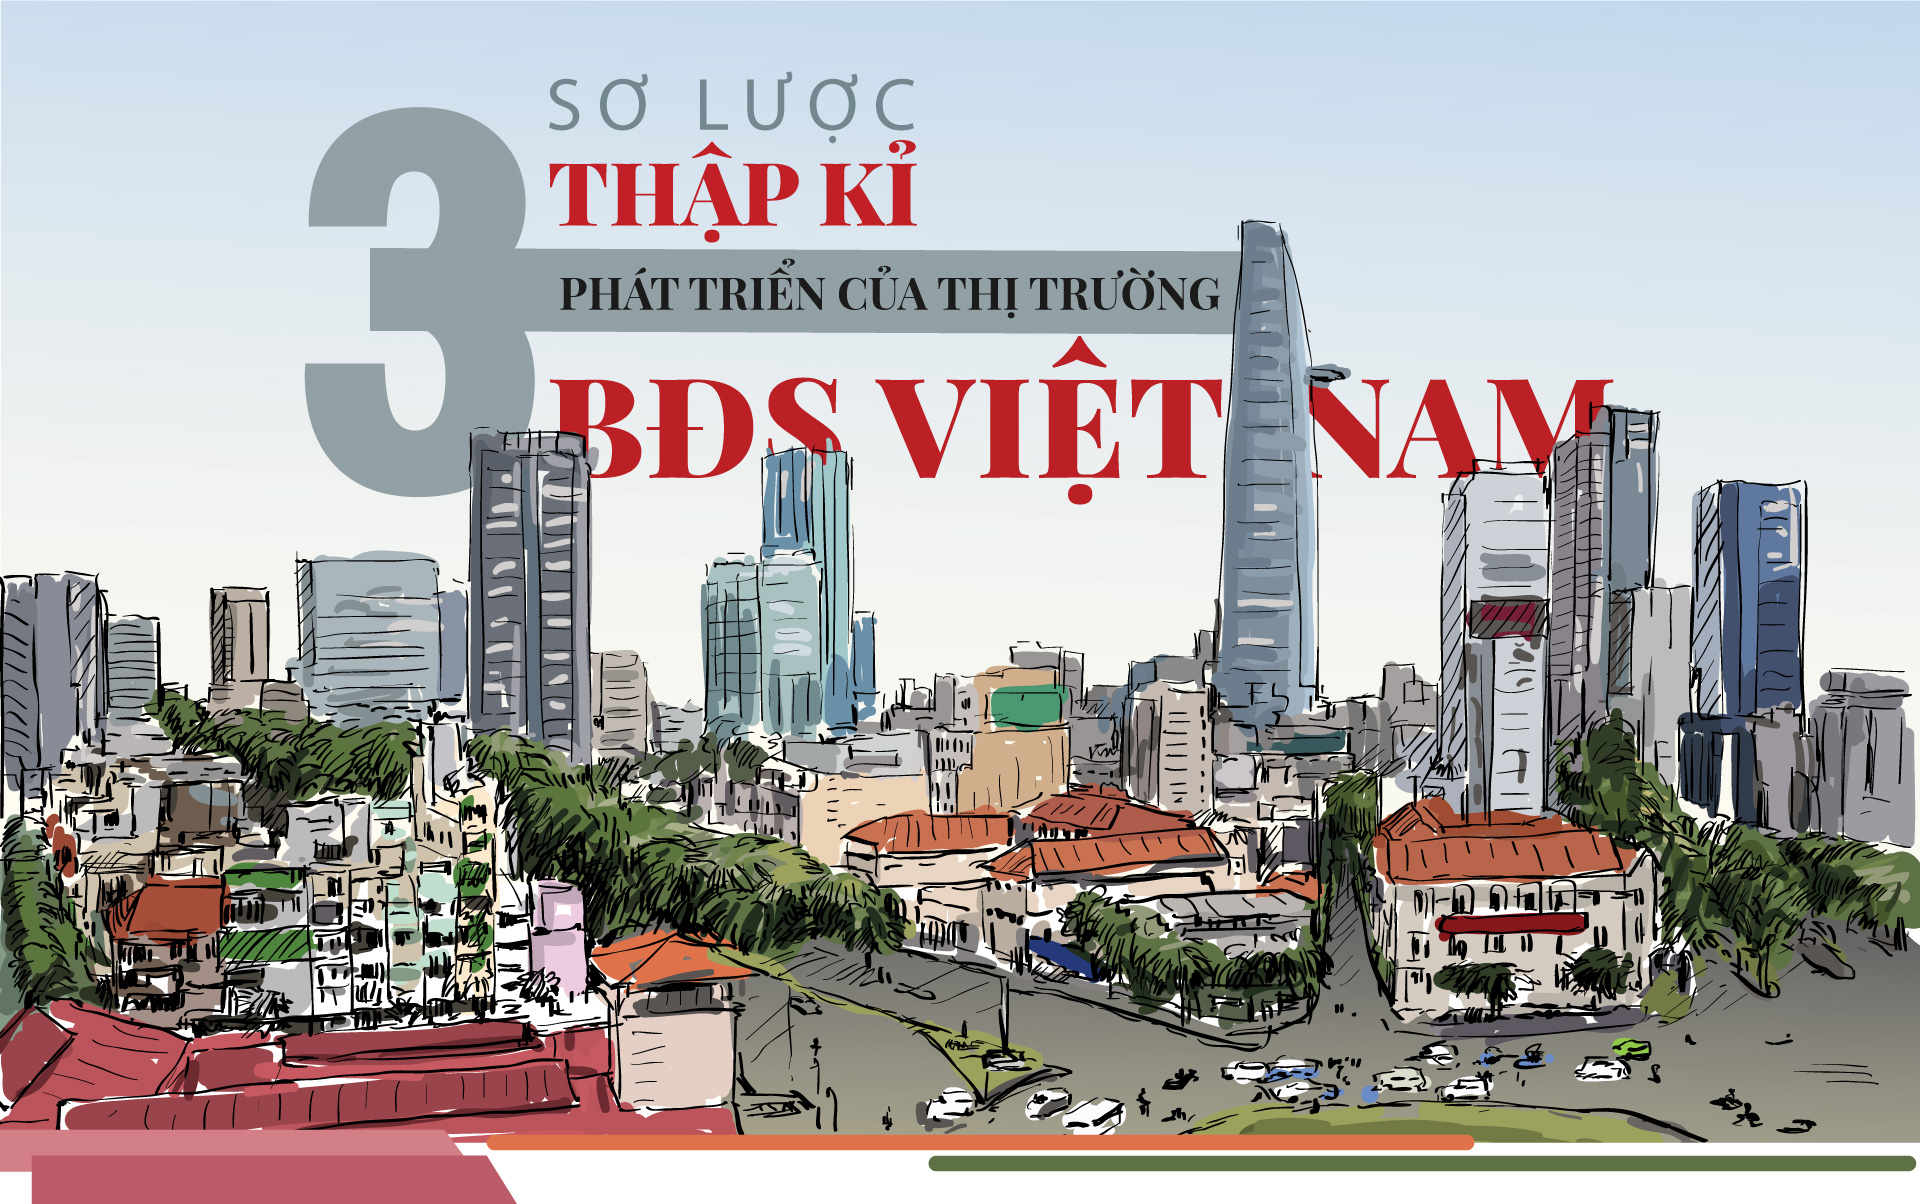 Sơ lược 3 thập kỉ phát triển của thị trường Bất động sản Việt Nam